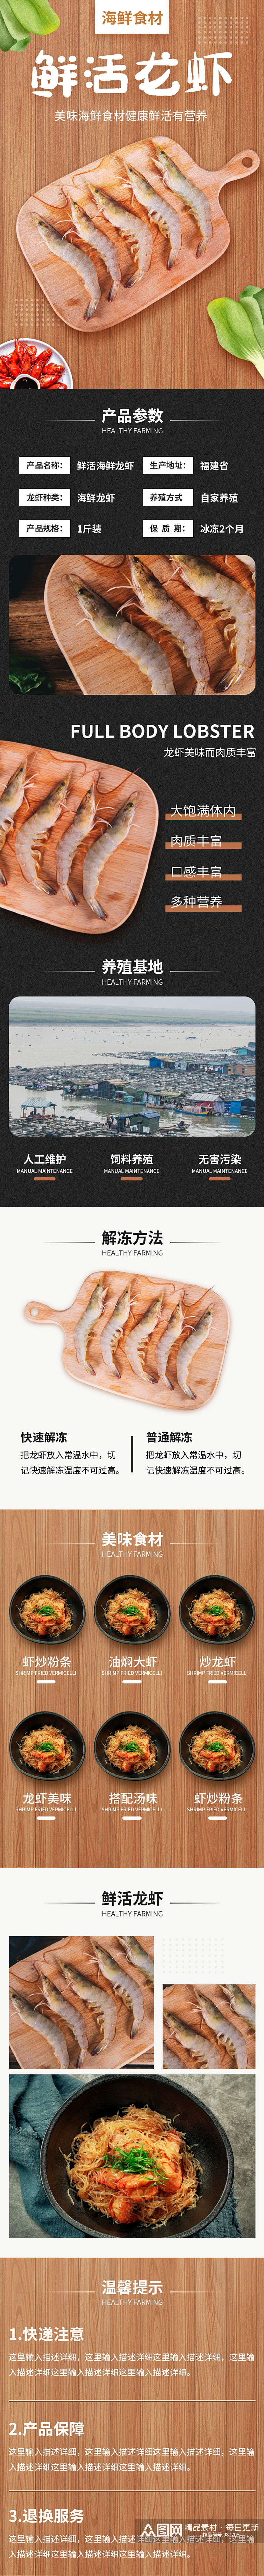 龙虾海鲜食品夏季美食详情页素材